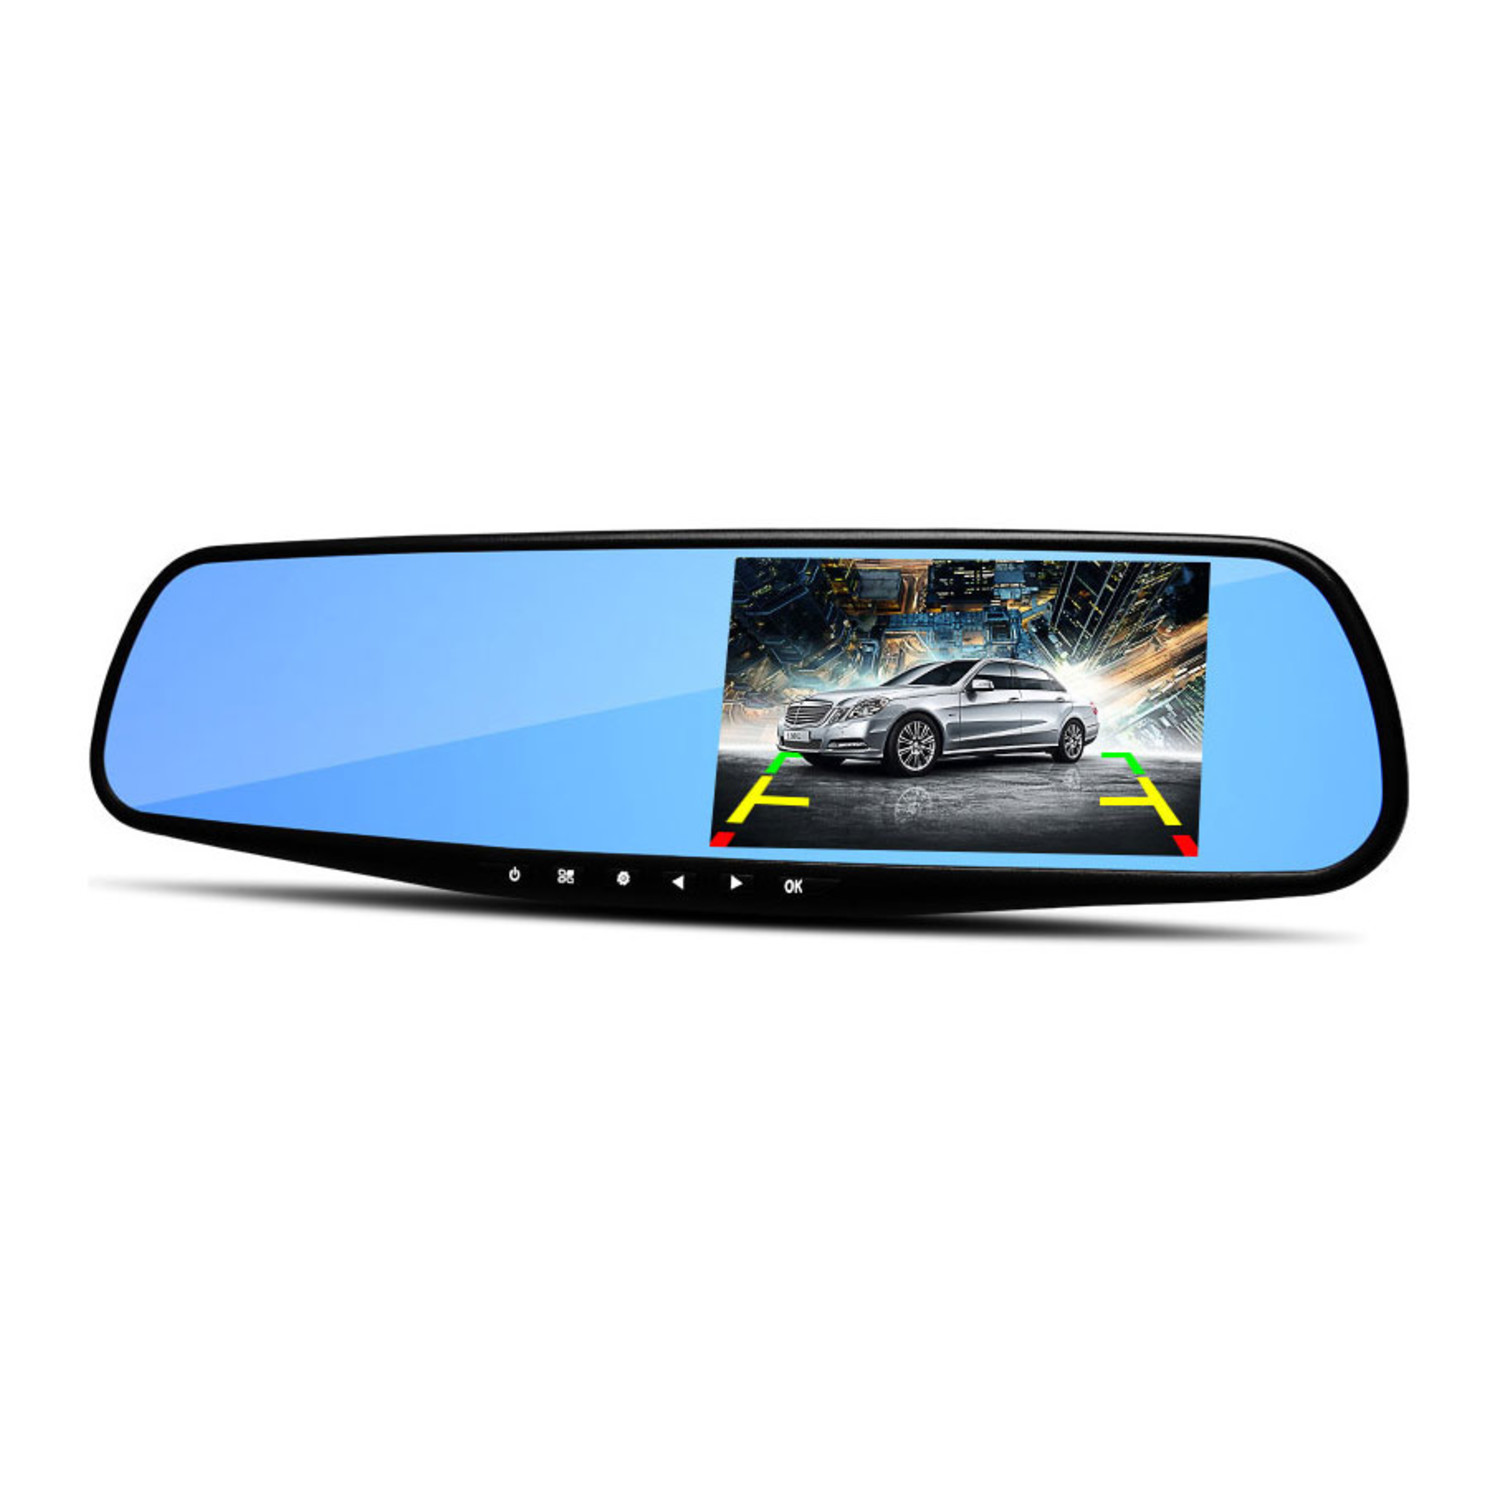 https://cdn.webshopapp.com/shops/280642/files/276272464/1500x1500x2/dashcamdeal-mirror-fullhd-1080p-1ch-blue-dashcam.jpg